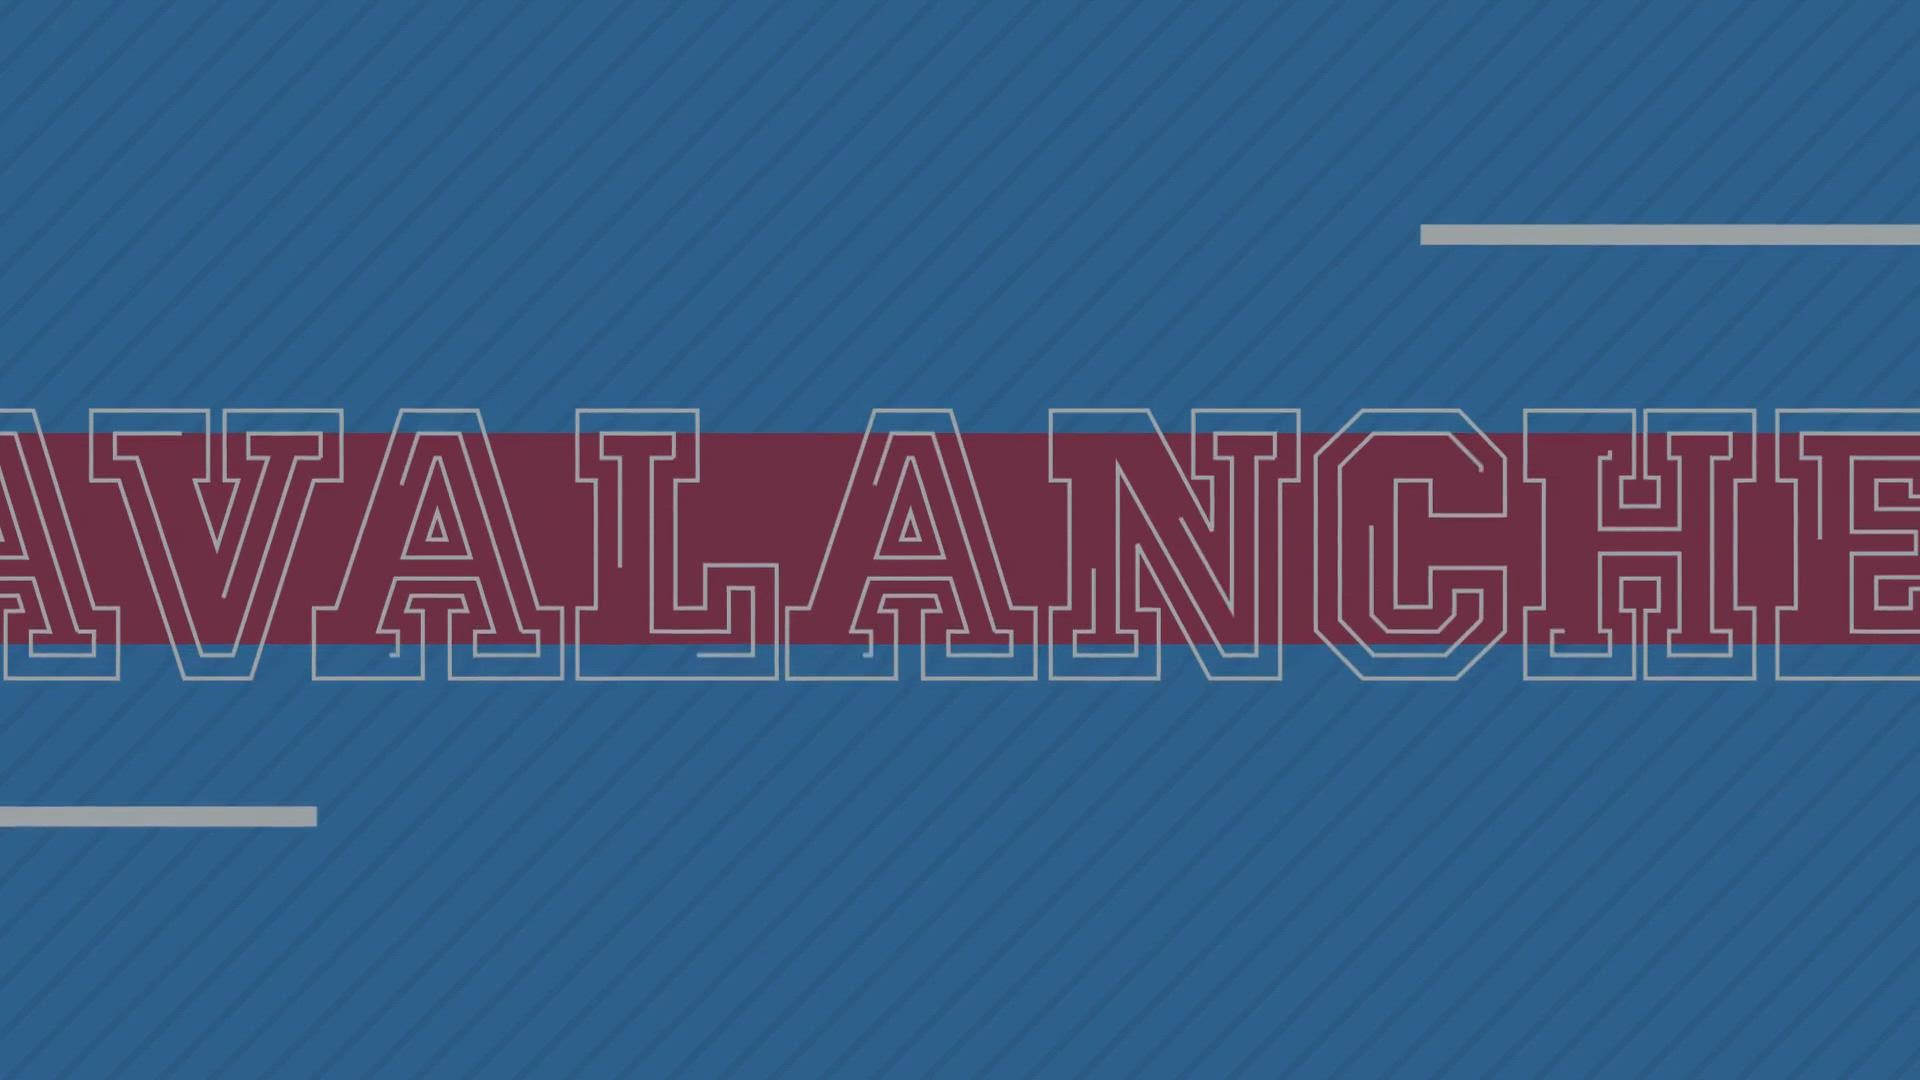 Colorado Avalanche 2022 Round 1 Playoffs intro 